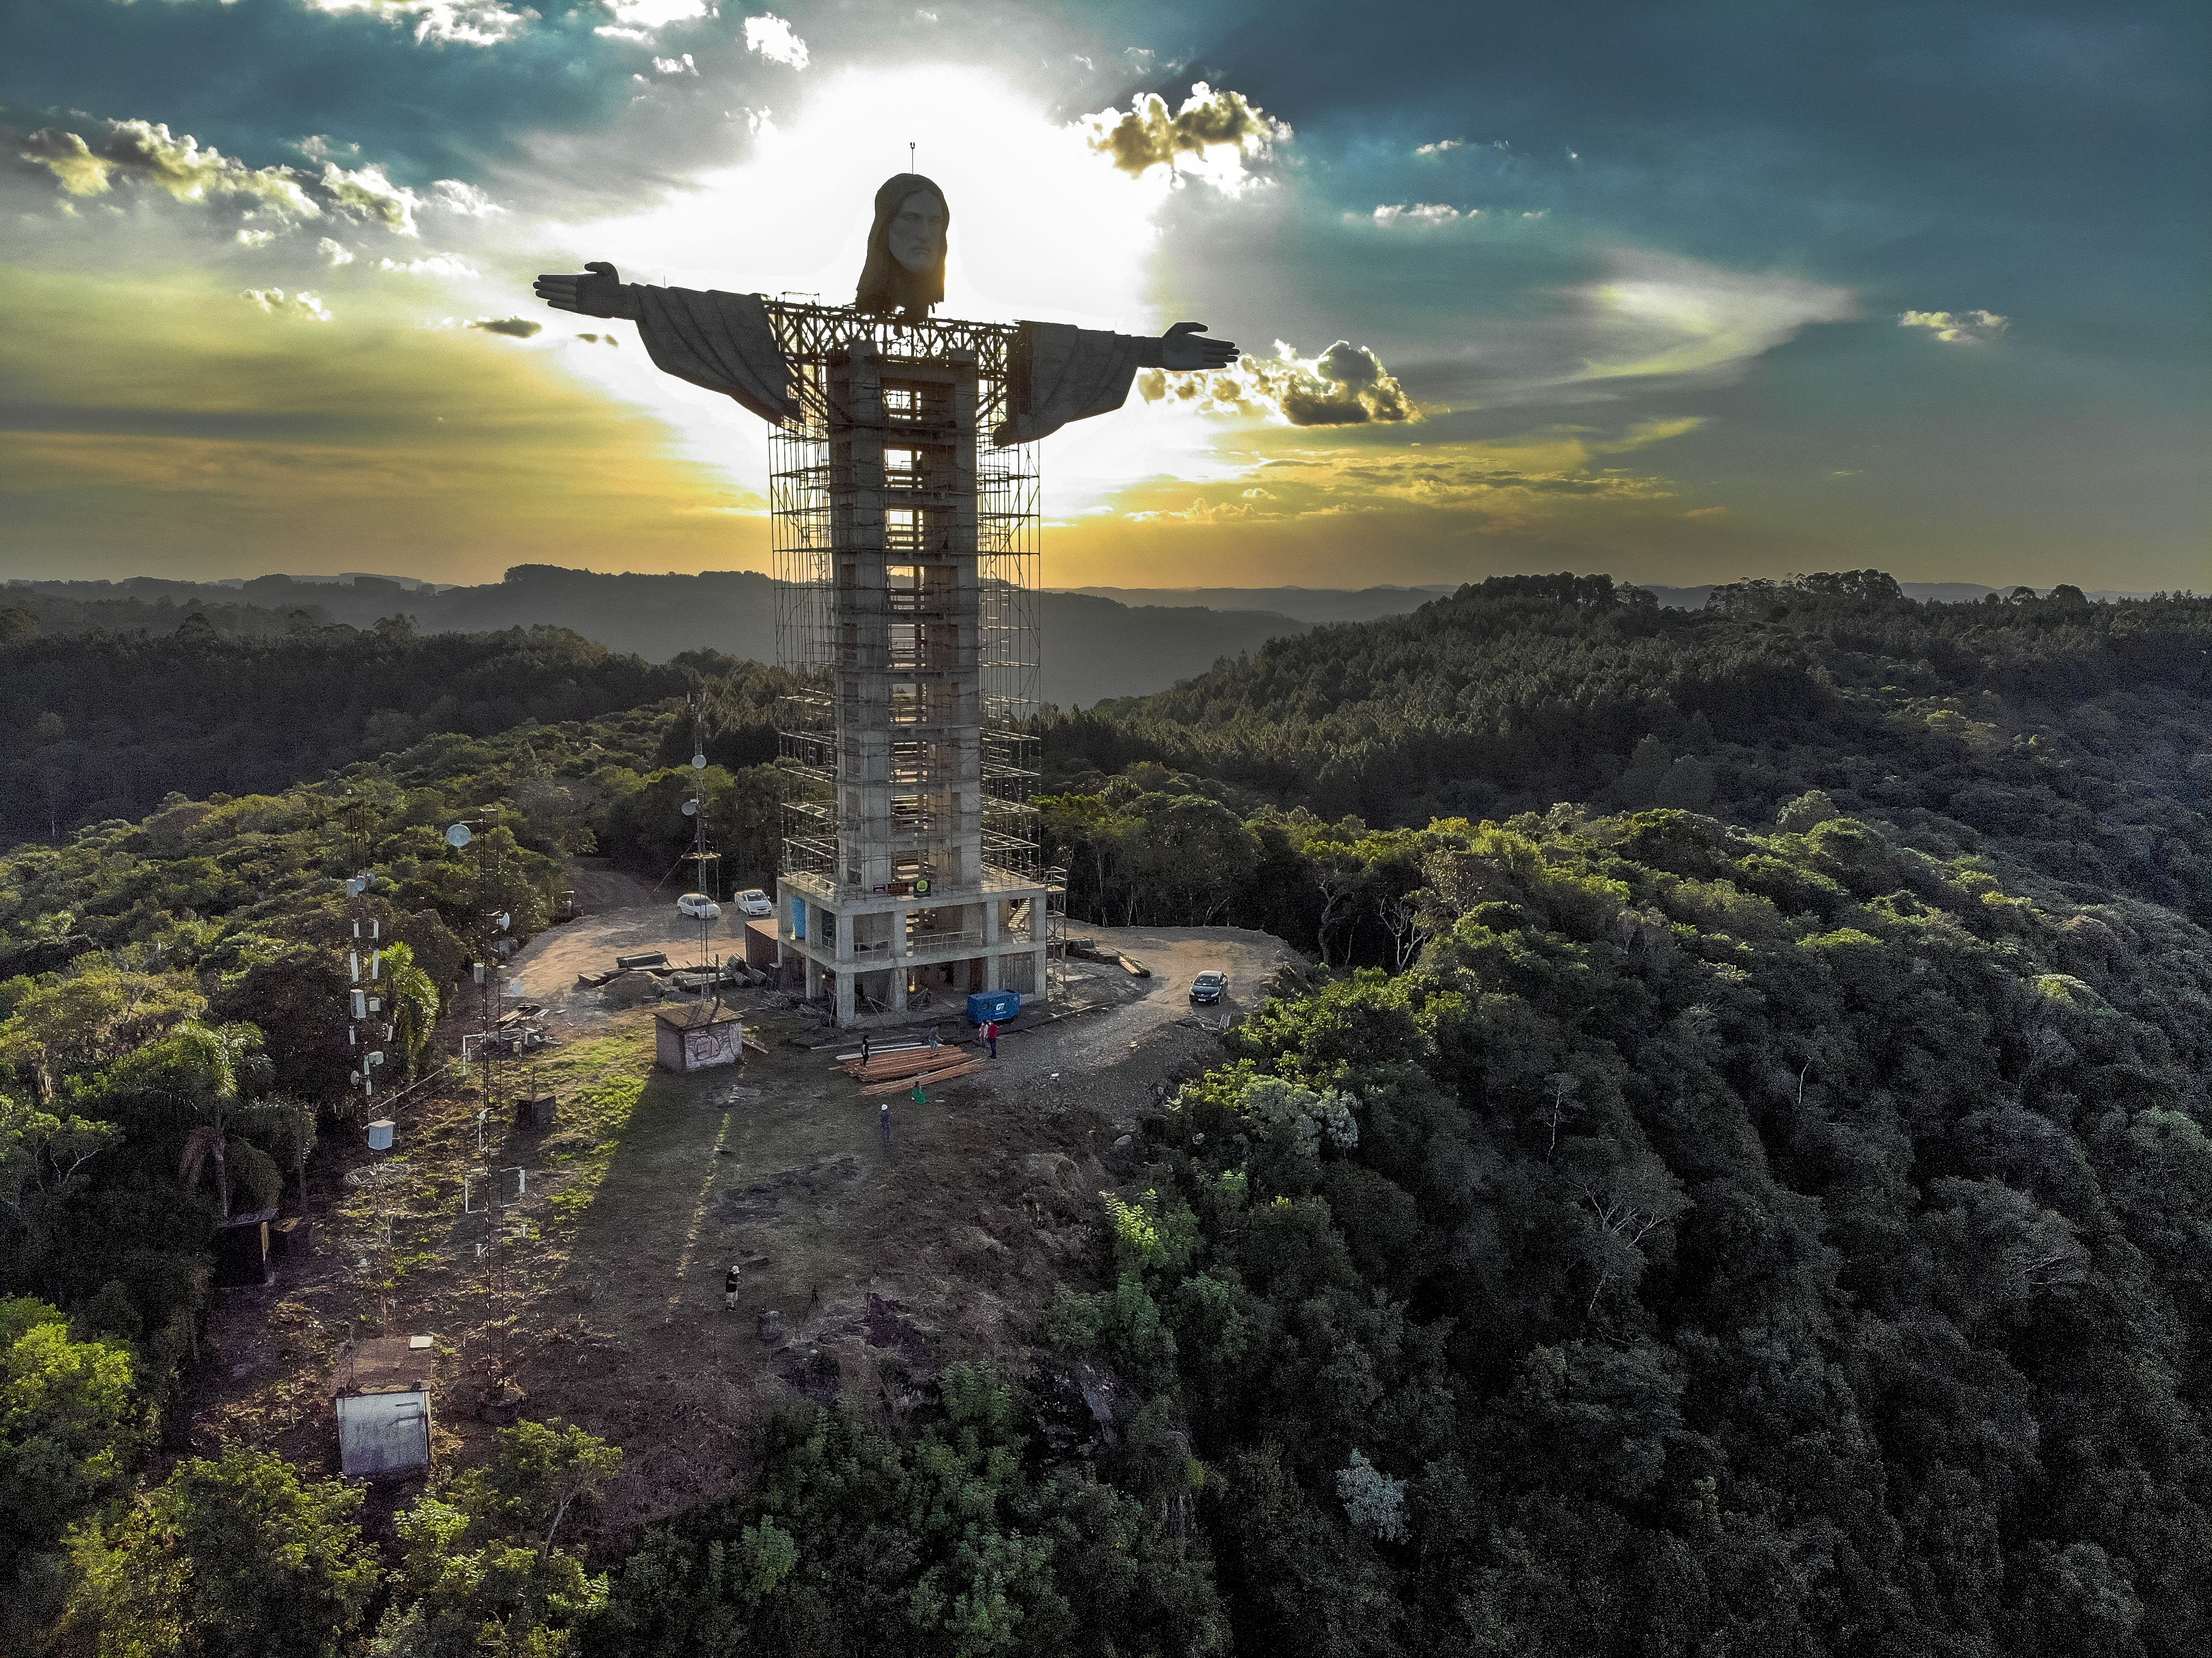 BRAZIL-RELIGION-CULTURE-CHRIST-STATUE